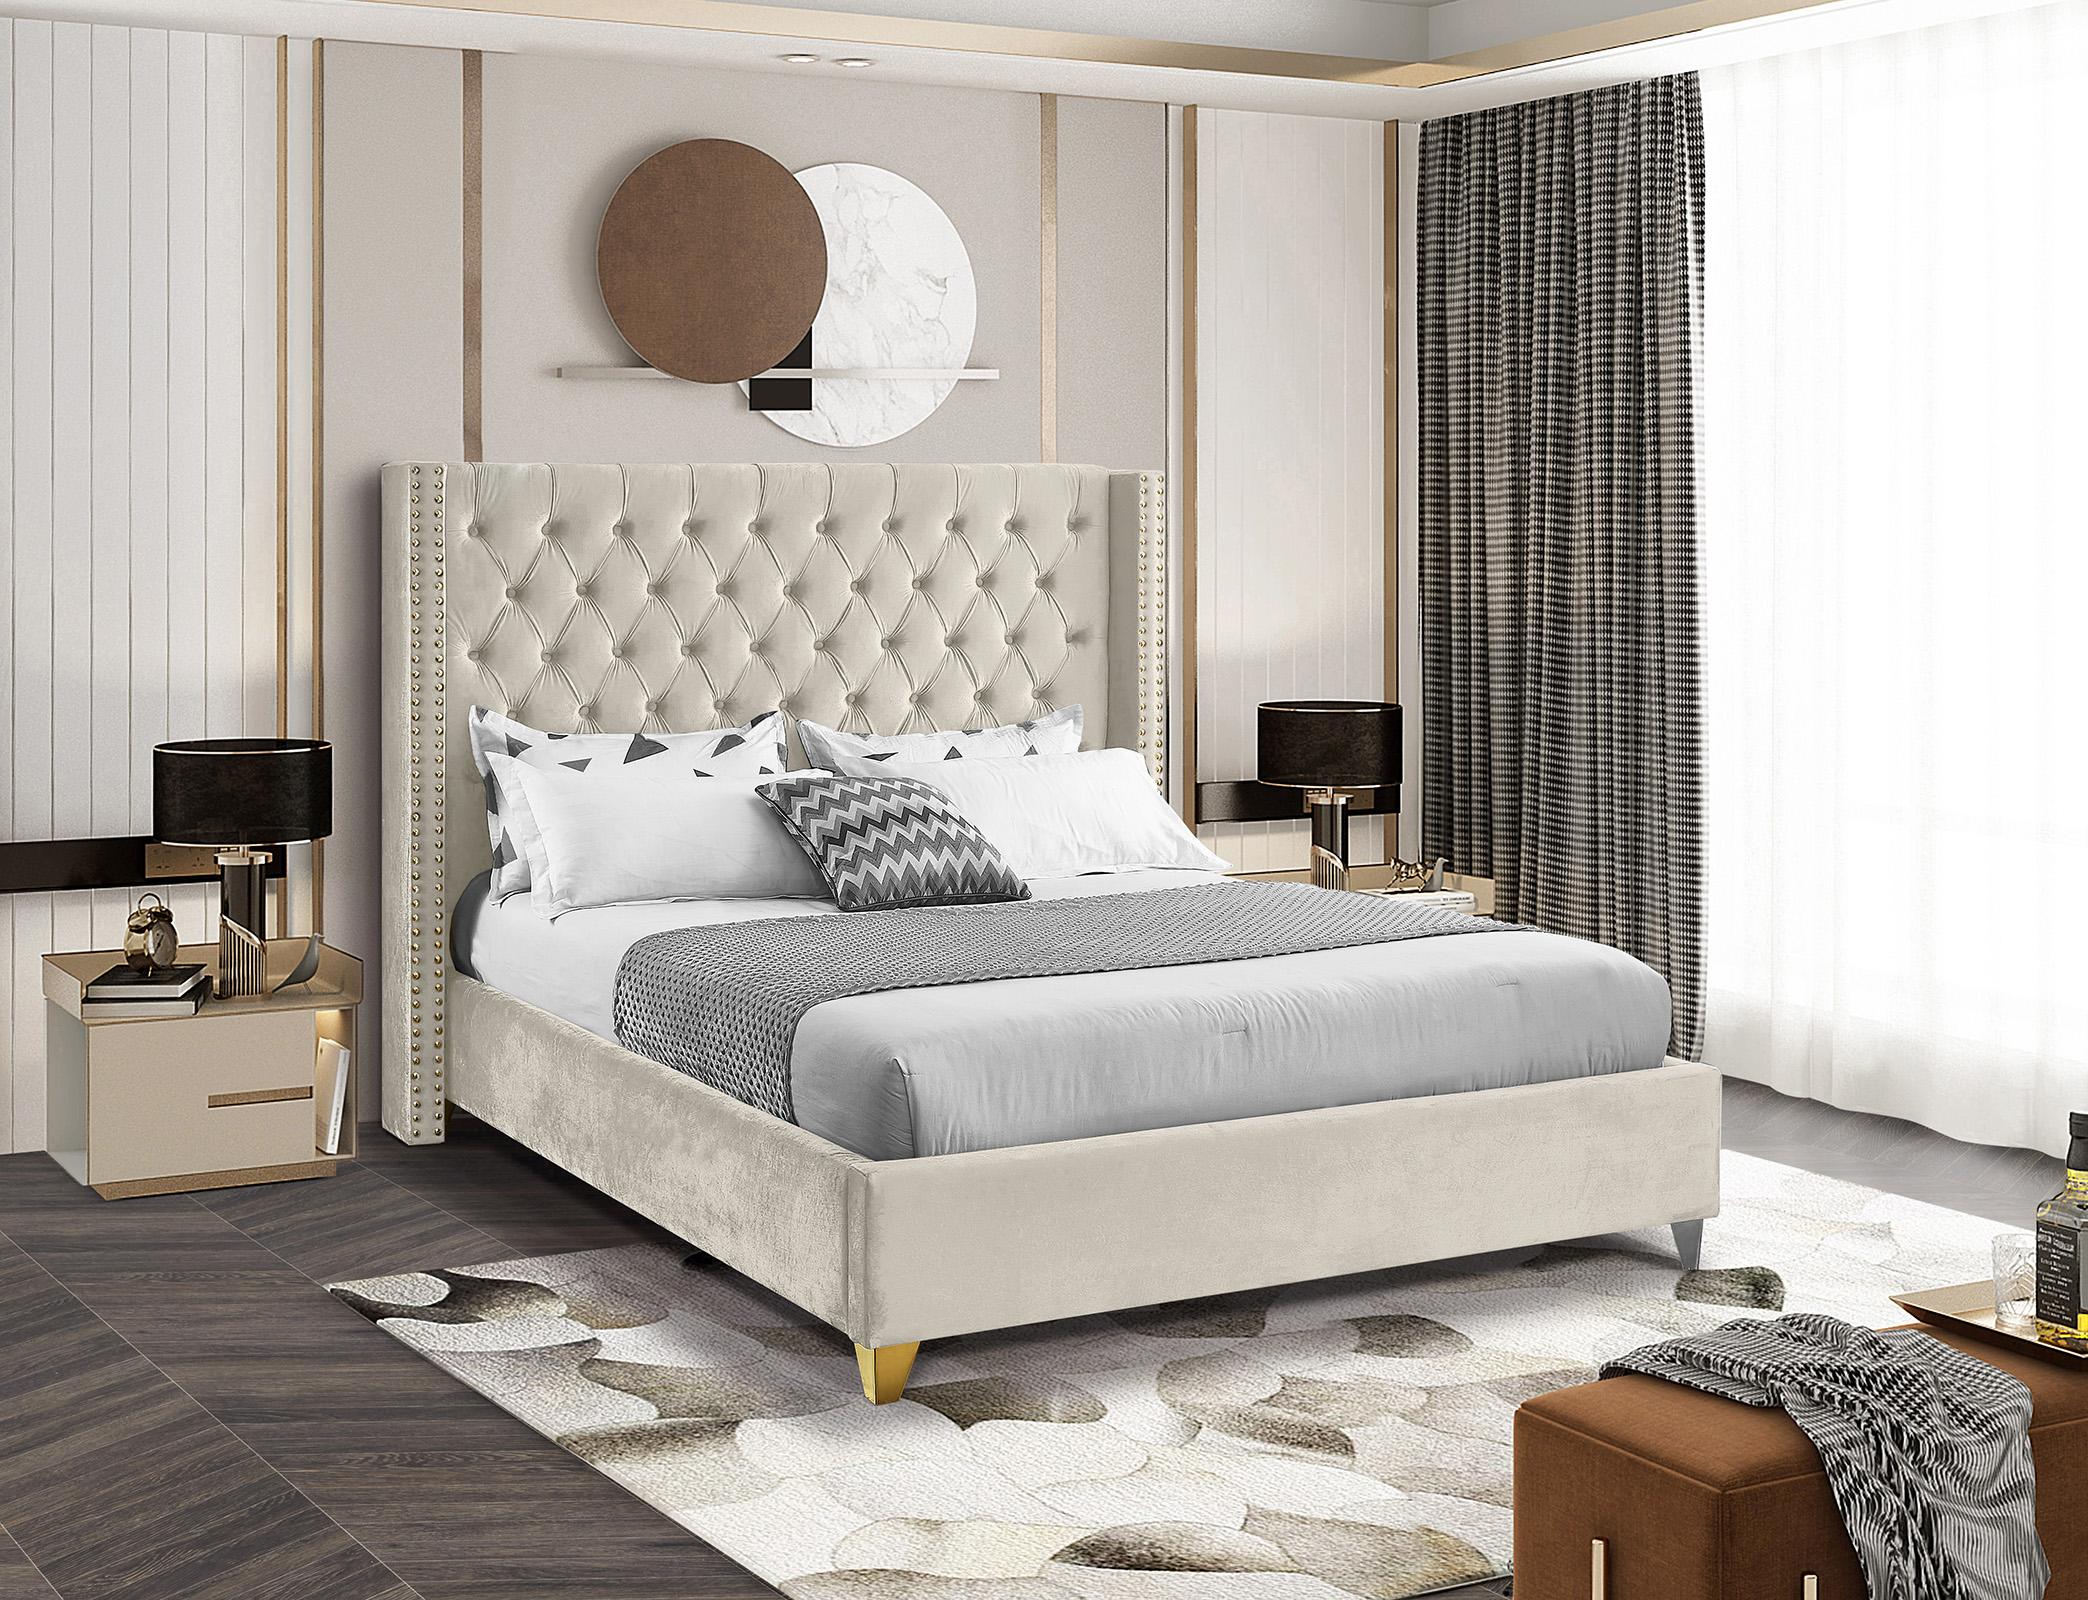 

    
BaroloCream-Q Meridian Furniture Platform Bed
